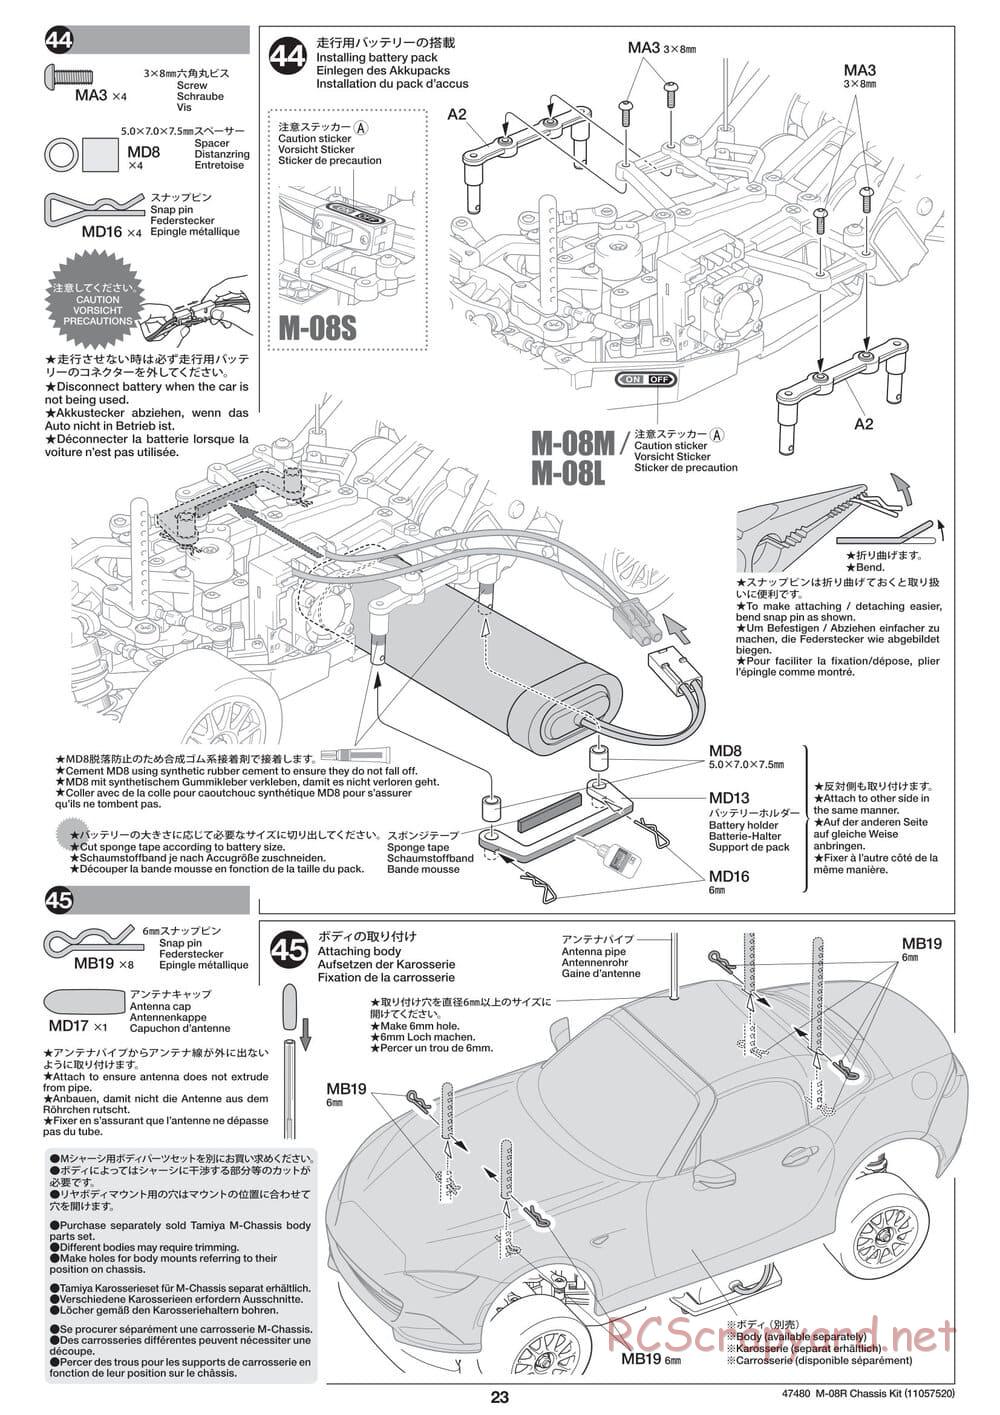 Tamiya - M-08R Chassis - Manual - Page 23